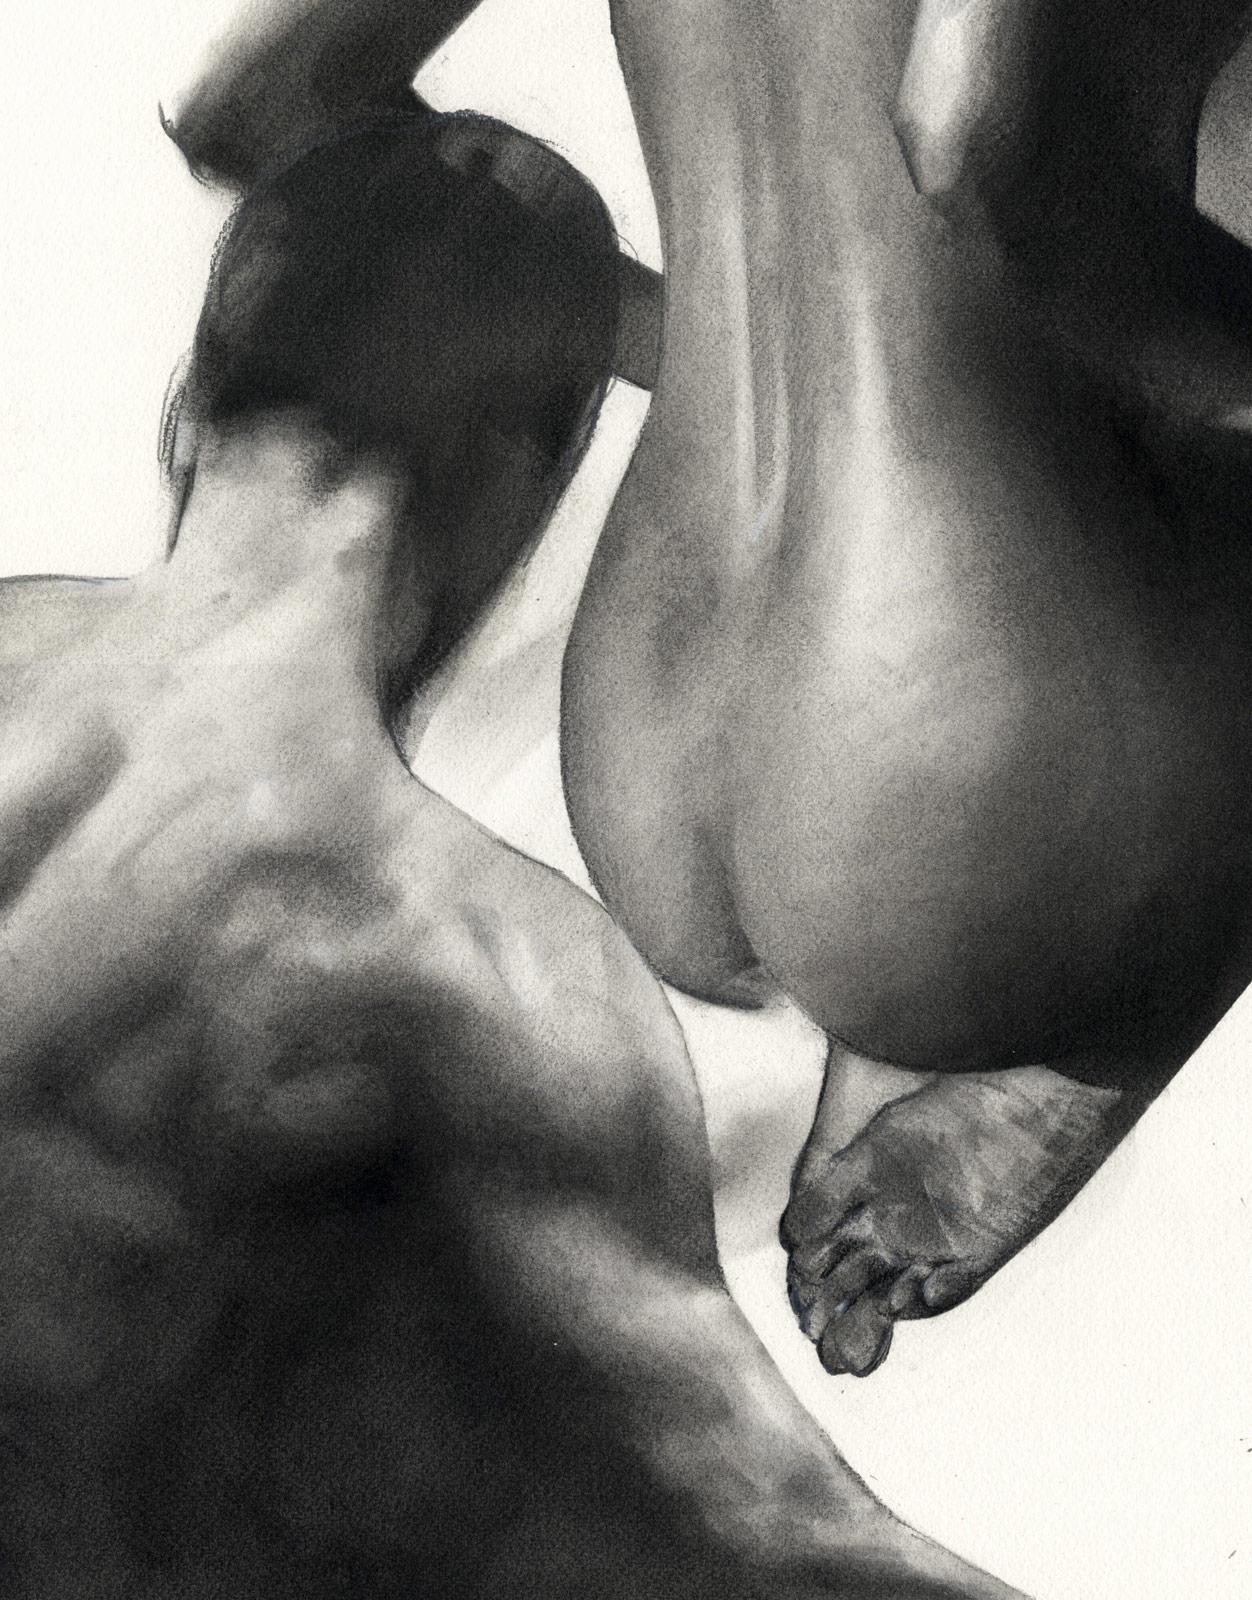 Homme et femme nus (deux désirs et une tension sexuelle) - Gris Figurative Art par Tom Leveritt